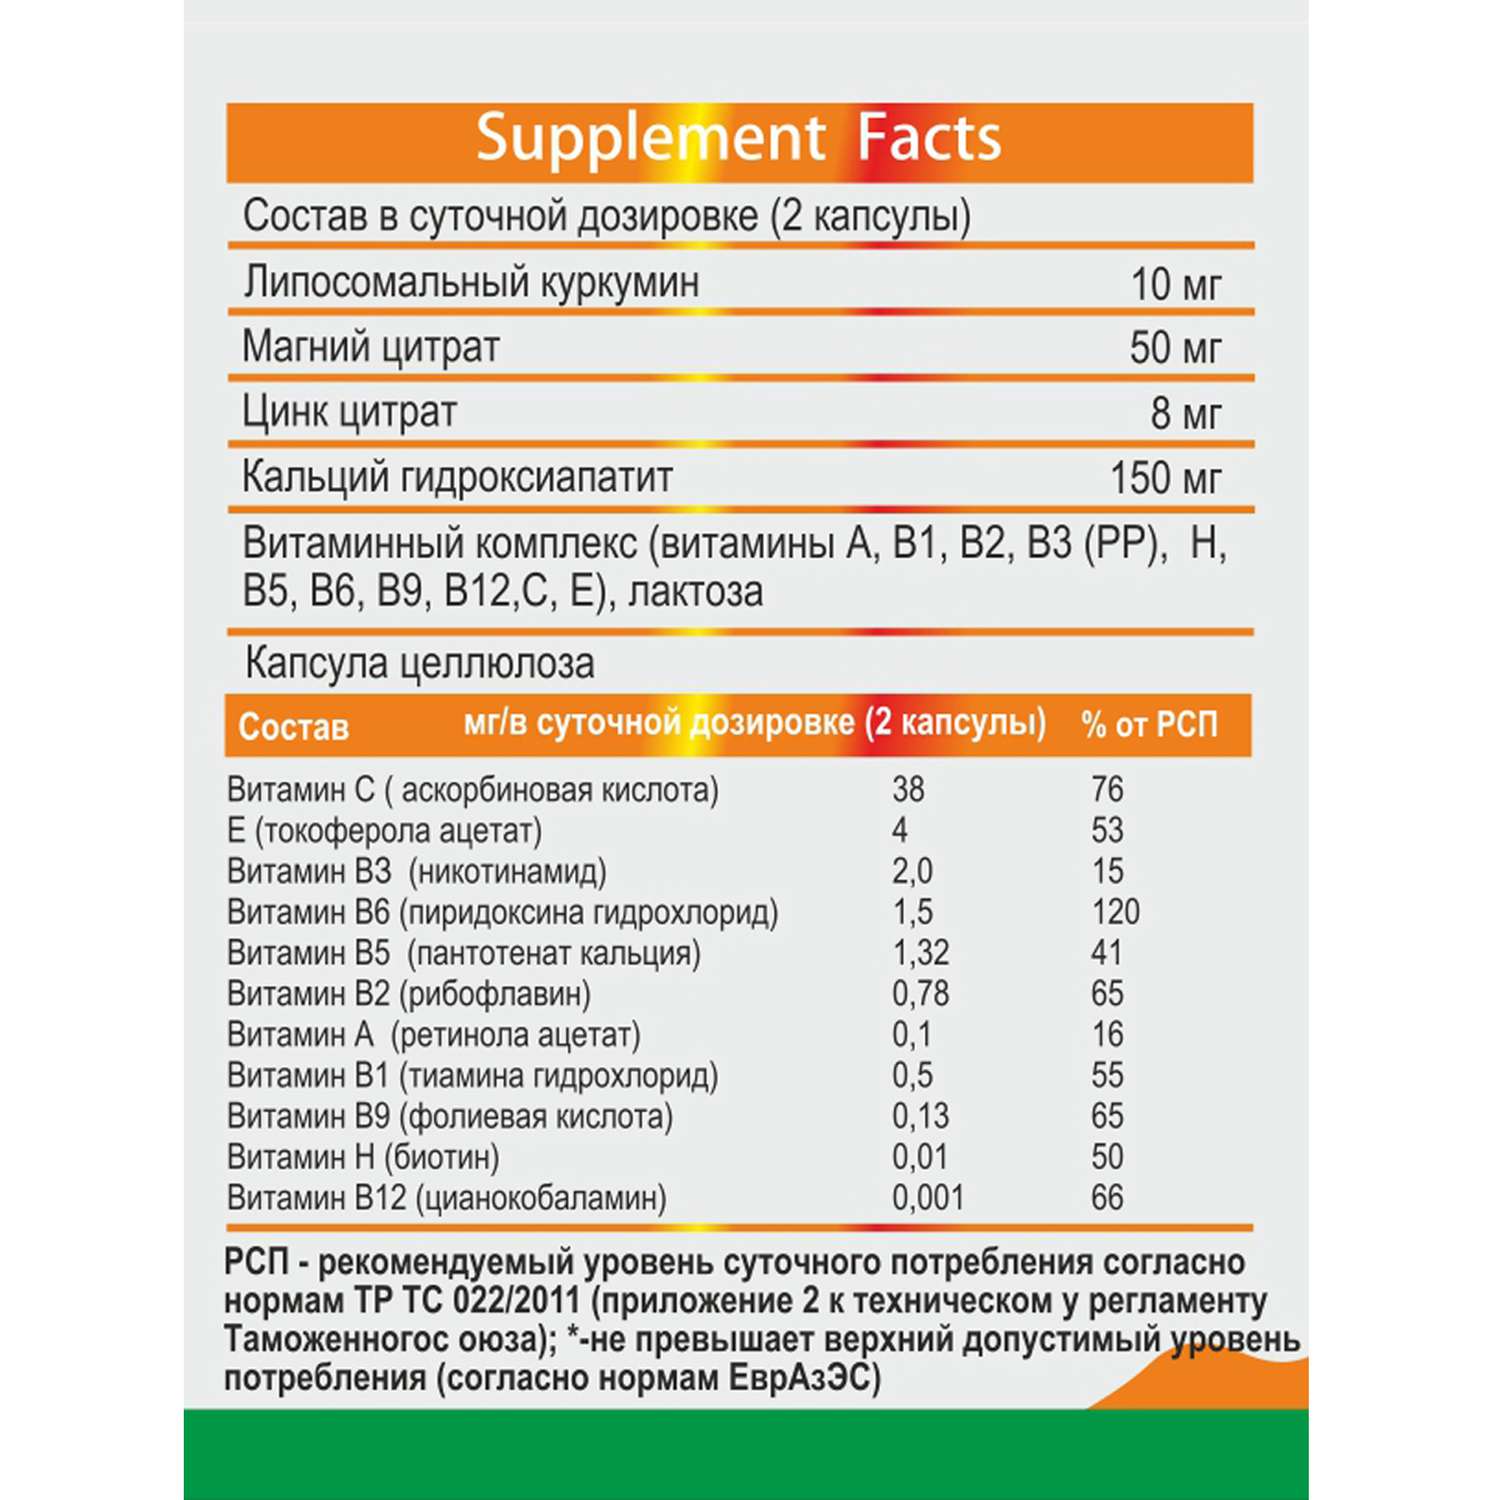 Концетраты пищевые Алтайские традиции Липосомальный куркумин Витамин кидс веган 60 капсул - фото 5